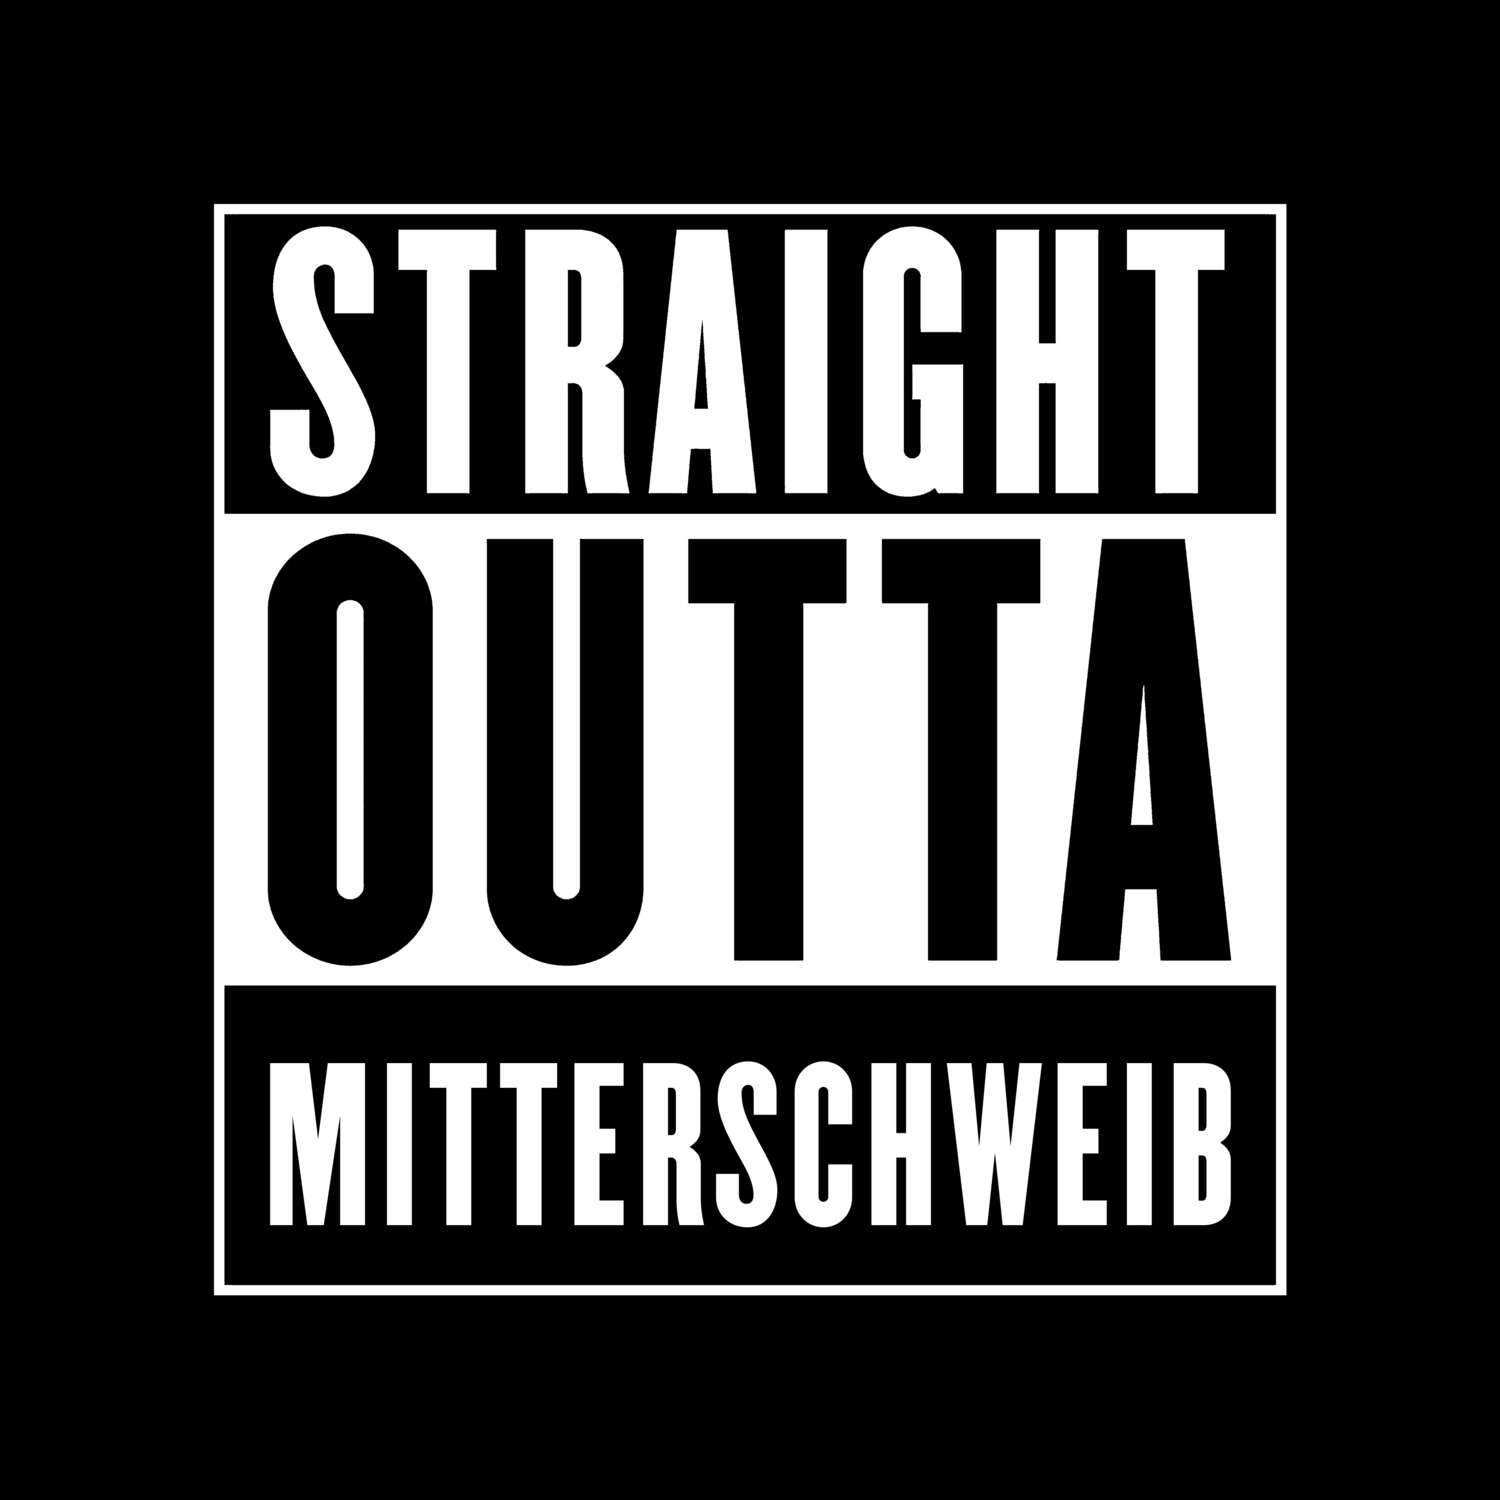 Mitterschweib T-Shirt »Straight Outta«